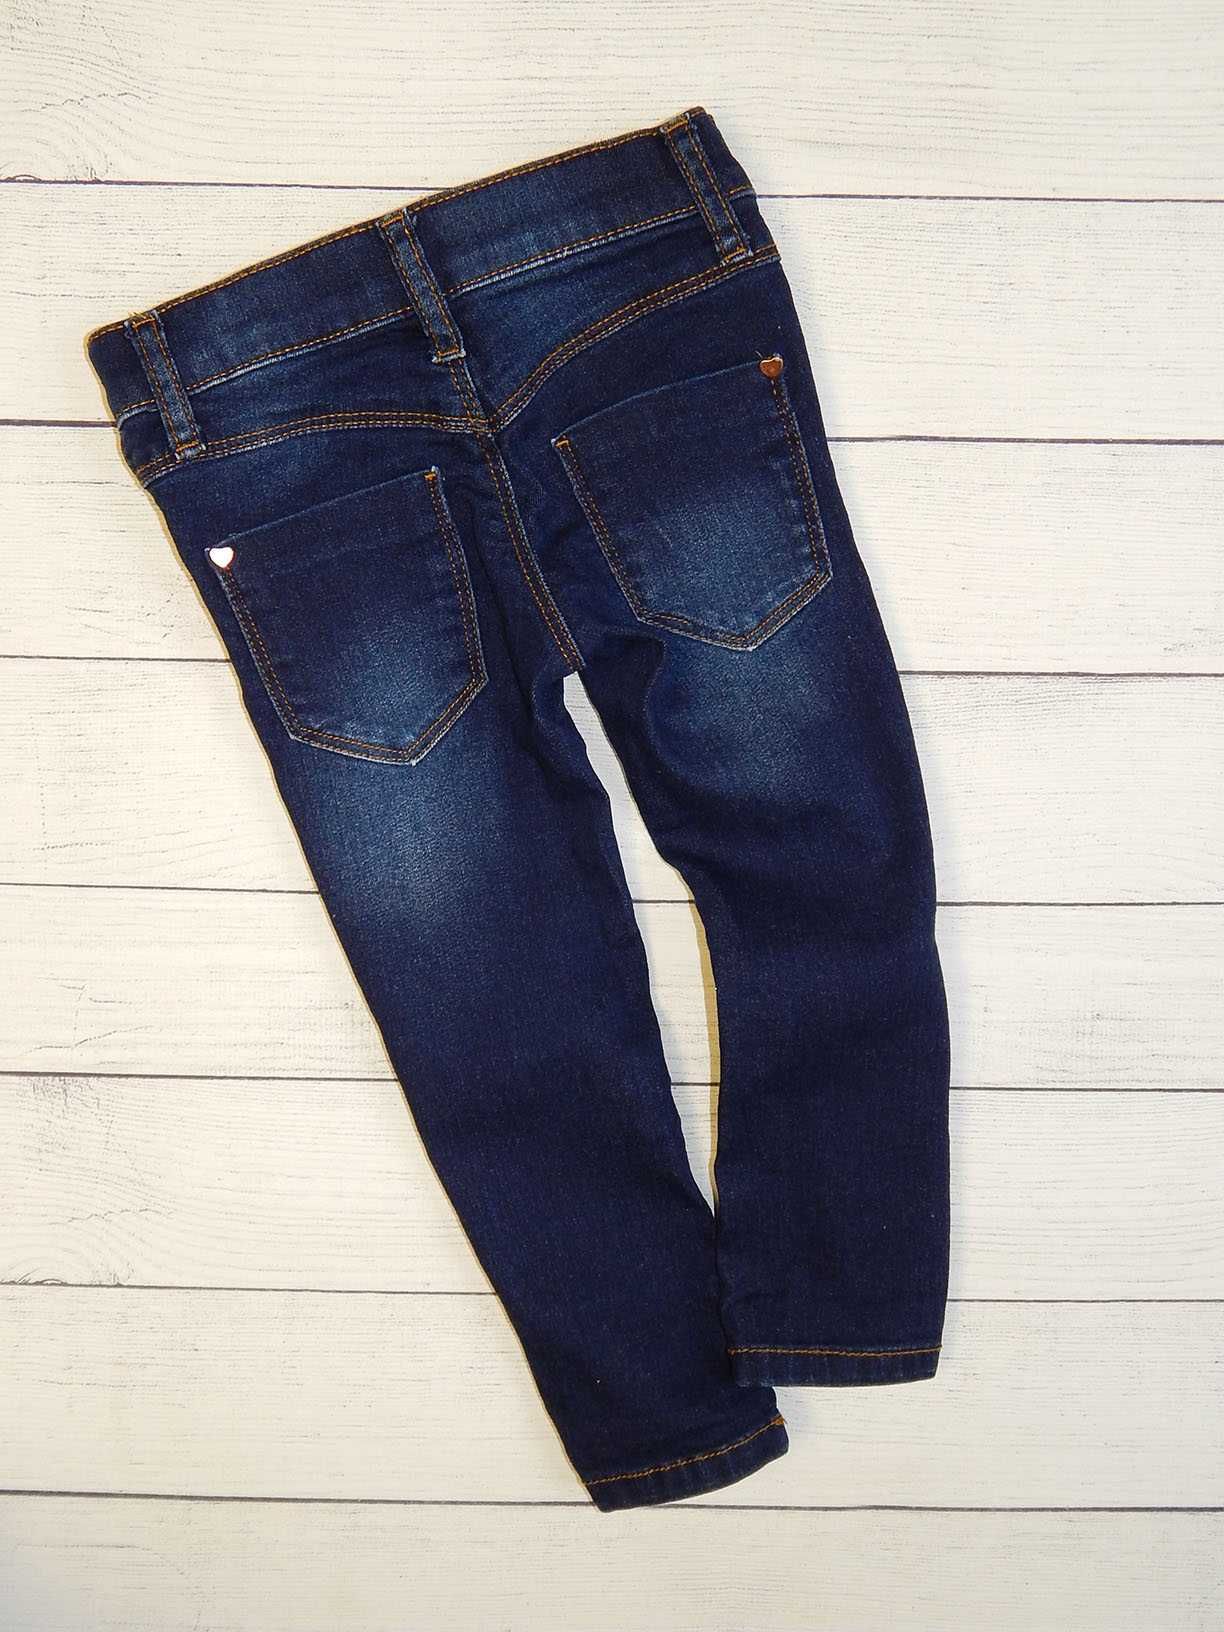 Качественные джинсы от mothercare, для девочки 2-2,5 года. 92 рост.